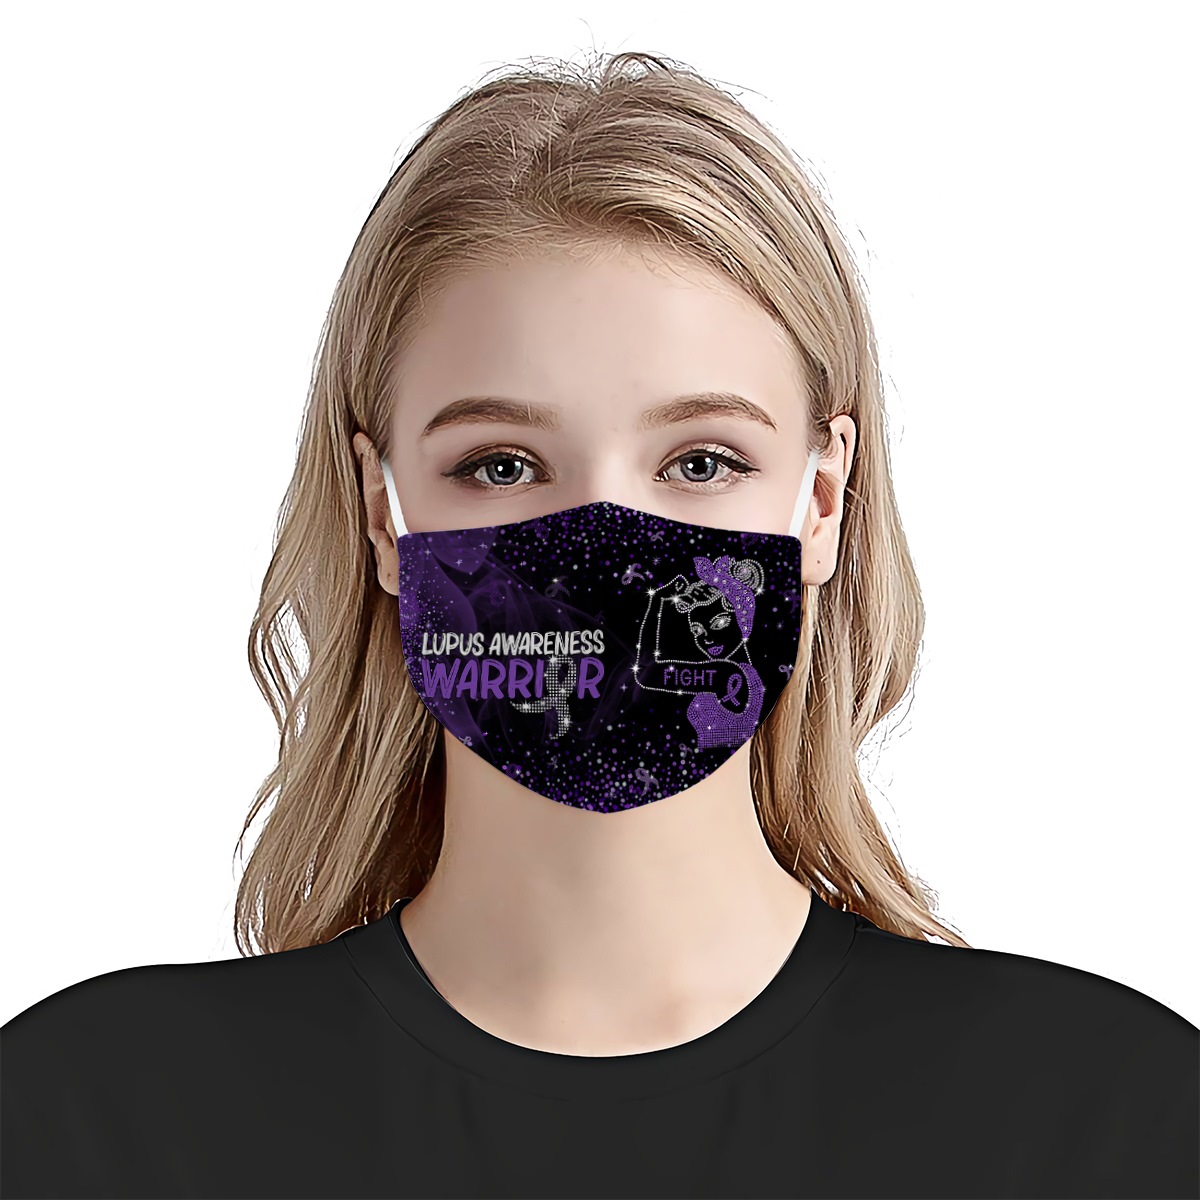 Fight lupus awareness warrior face mask